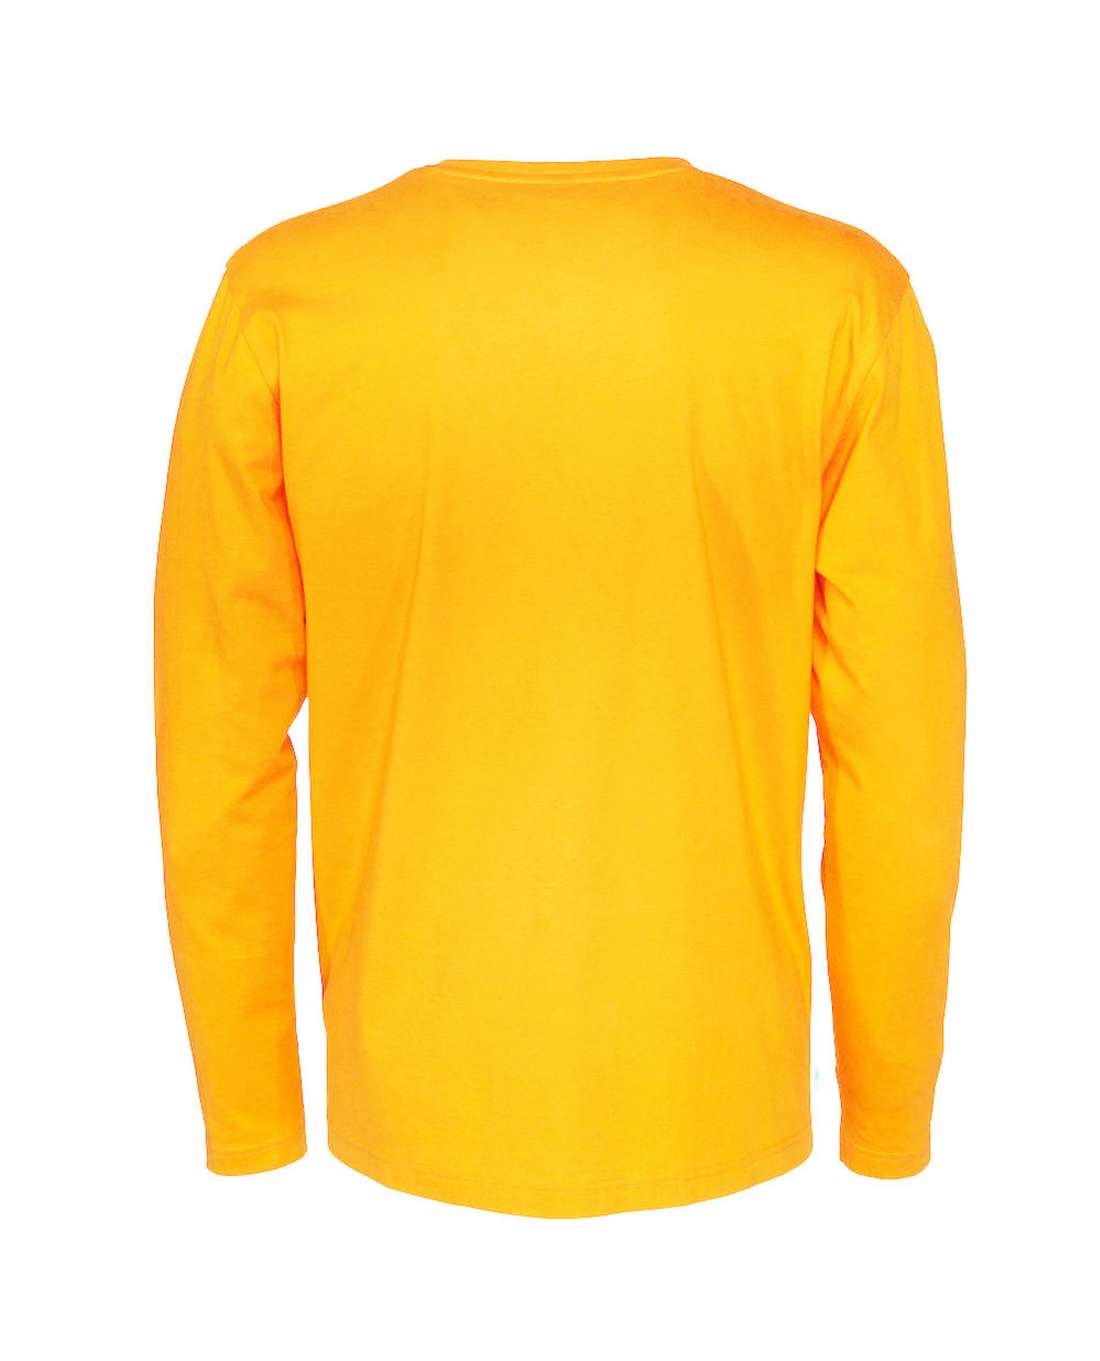 Cottover Miesten pitkähihainen T-paita, Keltainen